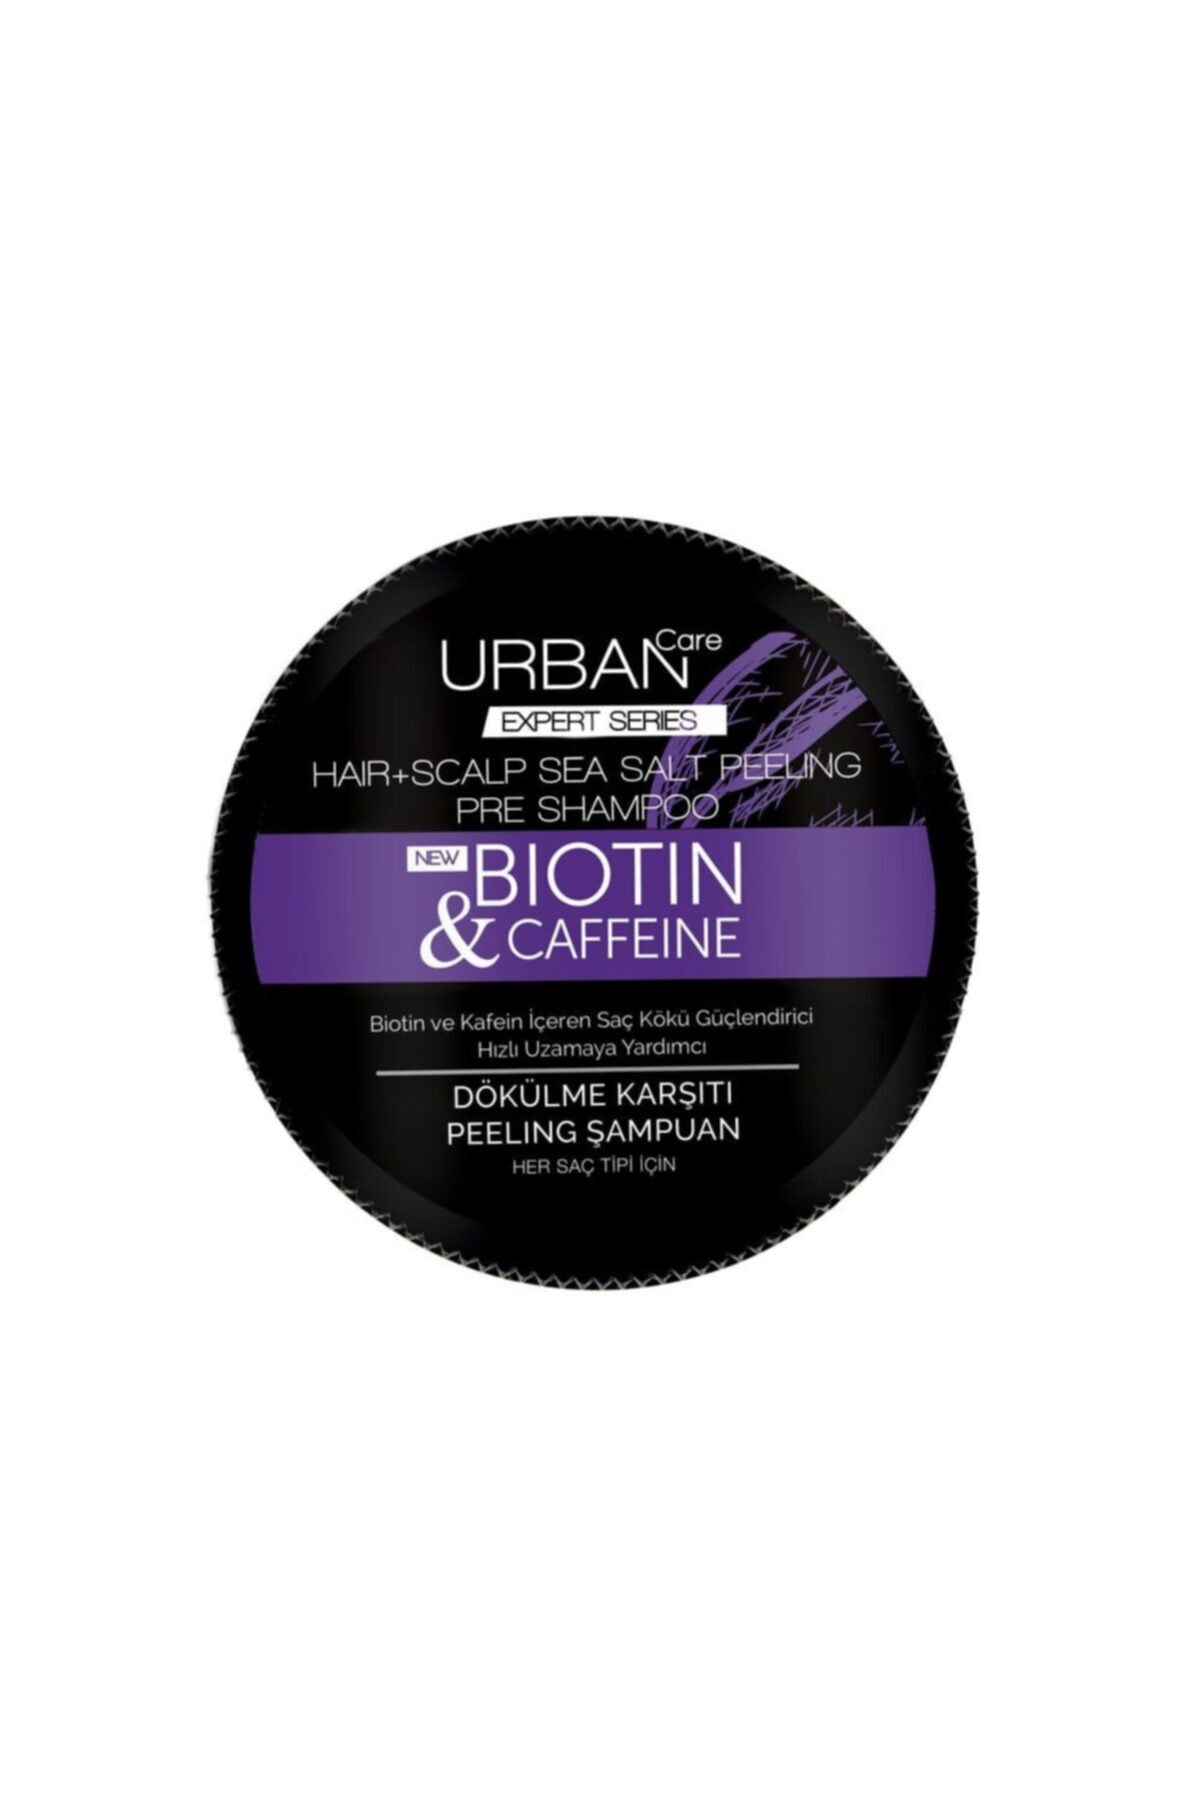 Urban Care Urban Biotin & Caffeine Dökülme Karşıtı Peeling Şampuan 200ml